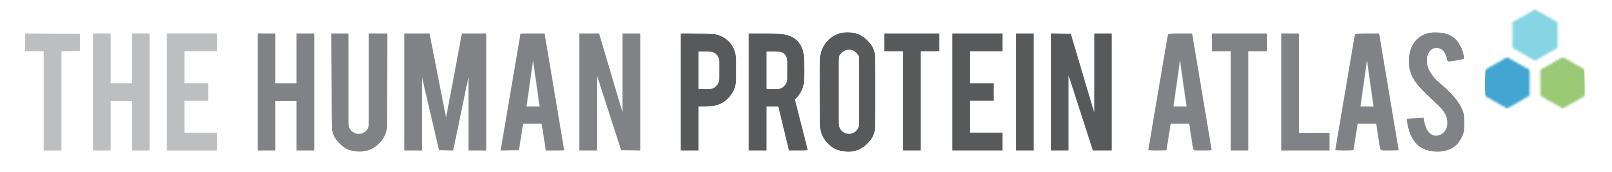 Human Protein Atlas site logo